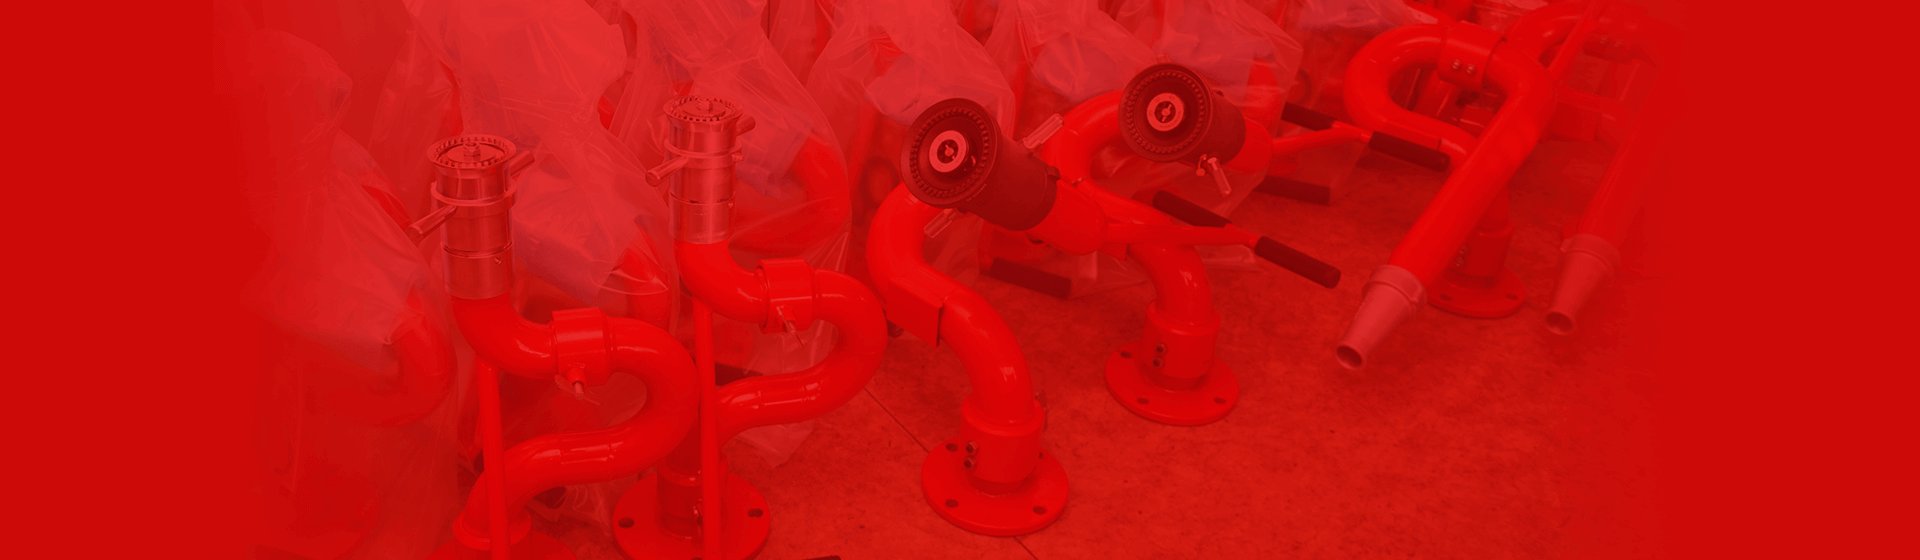  Производство роботизированных установок пожаротушения